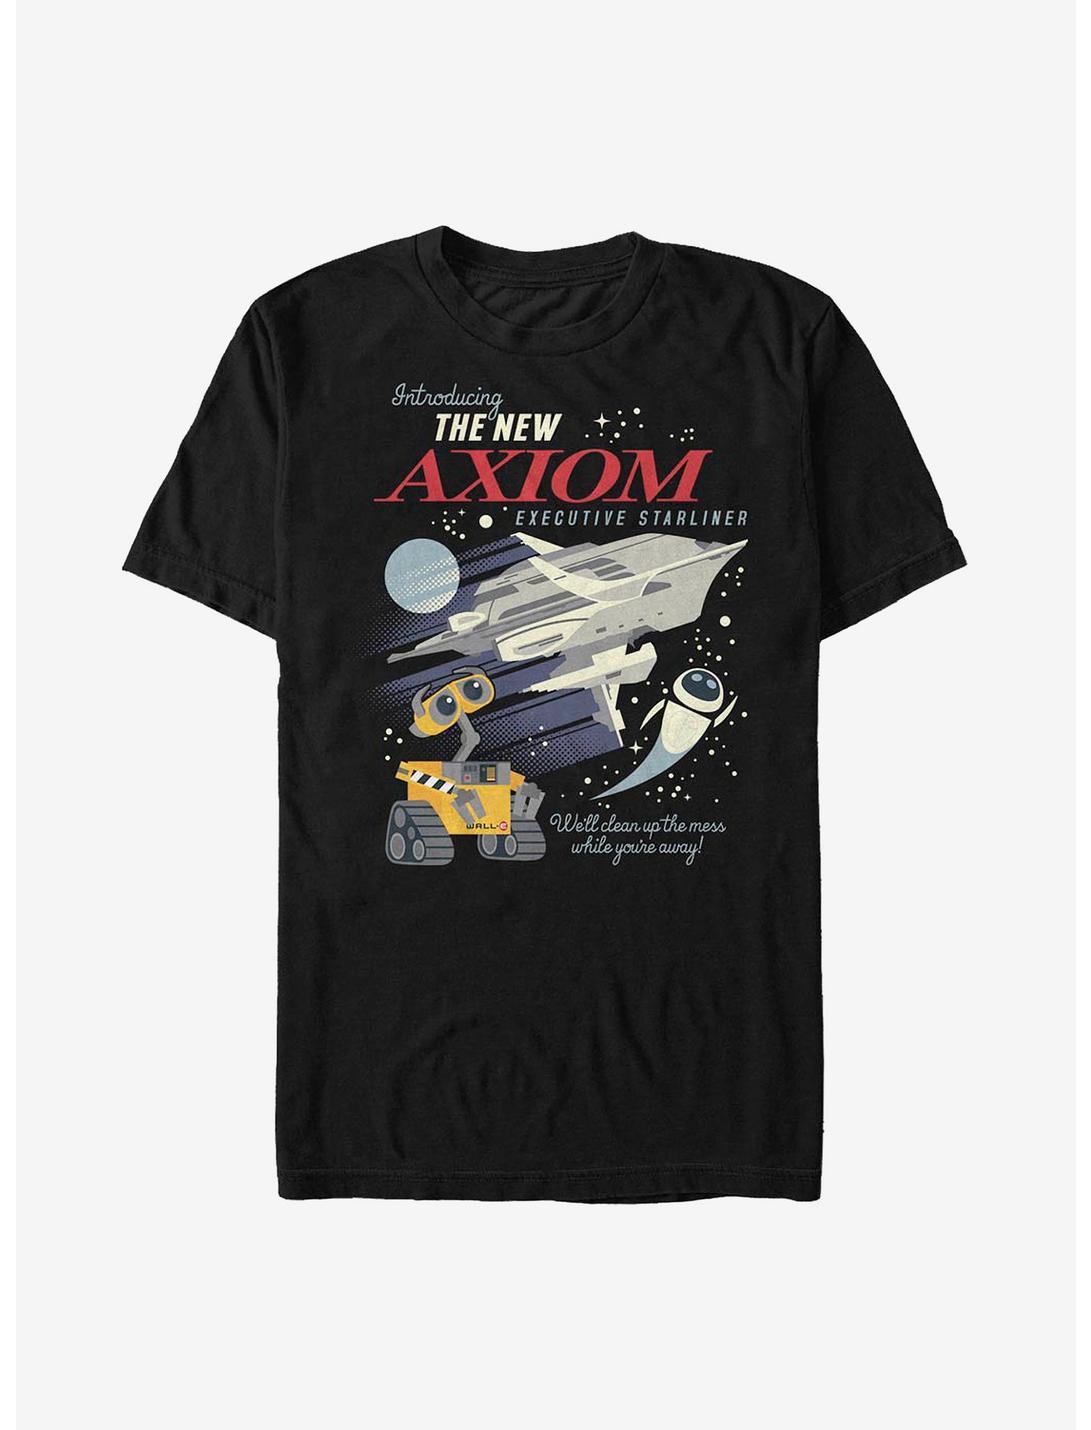 Disney Pixar WALL-E Axiom Poster T-Shirt, BLACK, hi-res